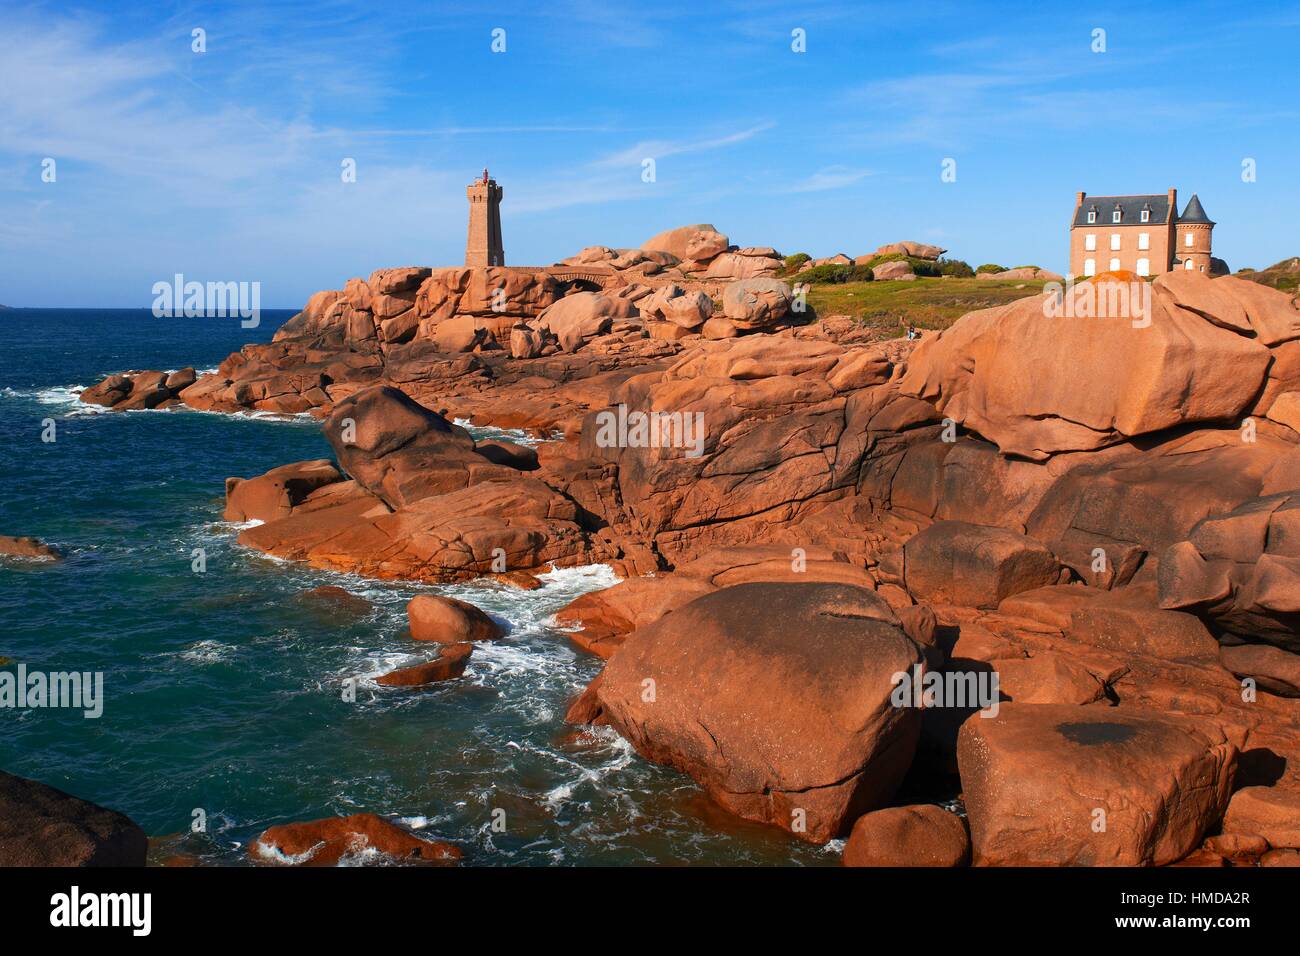 Ploumanach, Ploumanac´h, Mean Ruz Lighthouse, Phare de Mean Ruz, Pink granite coast, Cote de Granit Rose, Cotes d´Armor, Côtes-d´Armor, Perros-Guirec Stock Photo